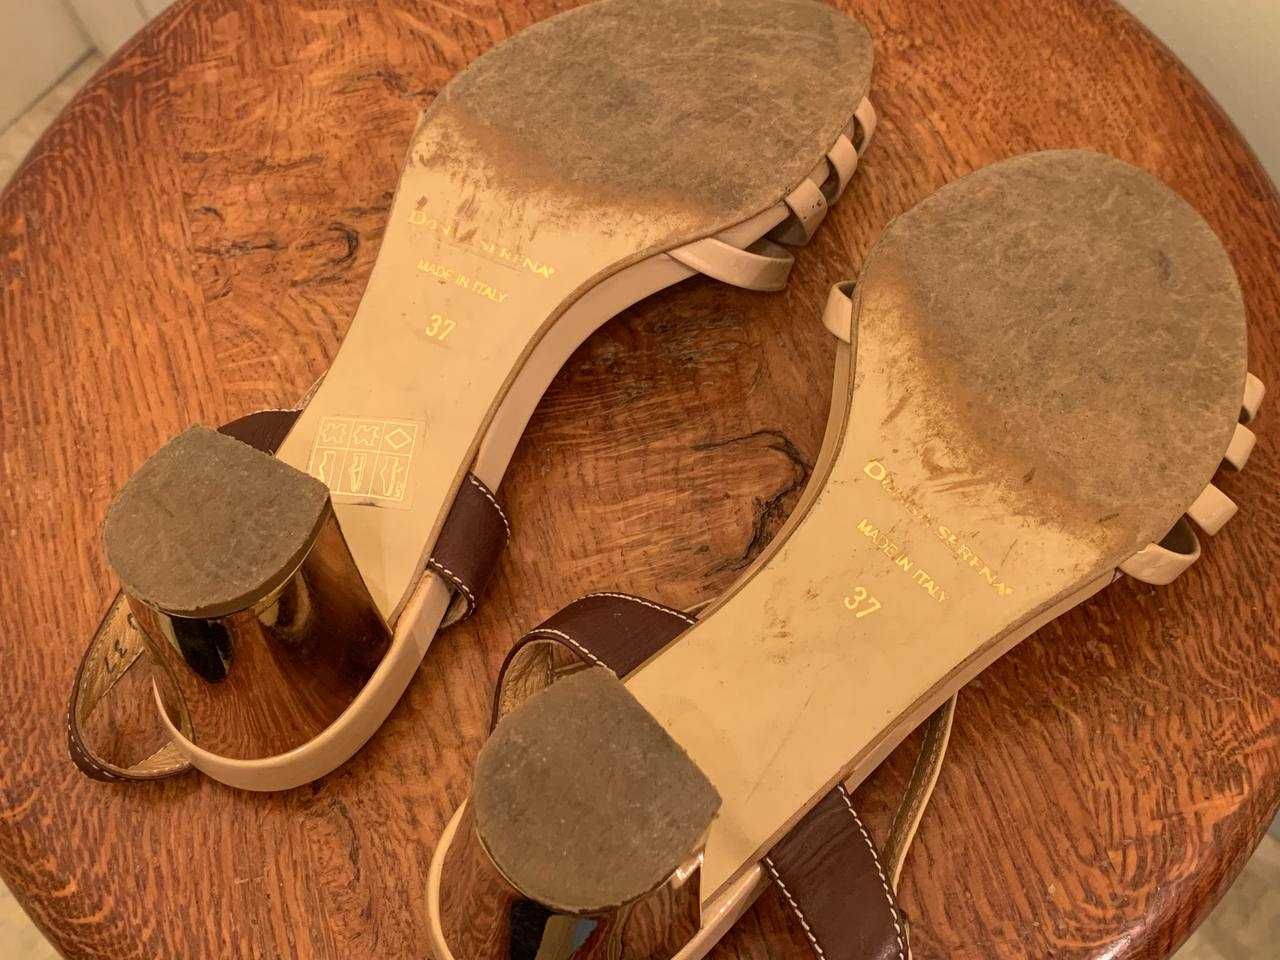 Жіноче взуття Босоніжки 37р. Made in Italy Donna Serena